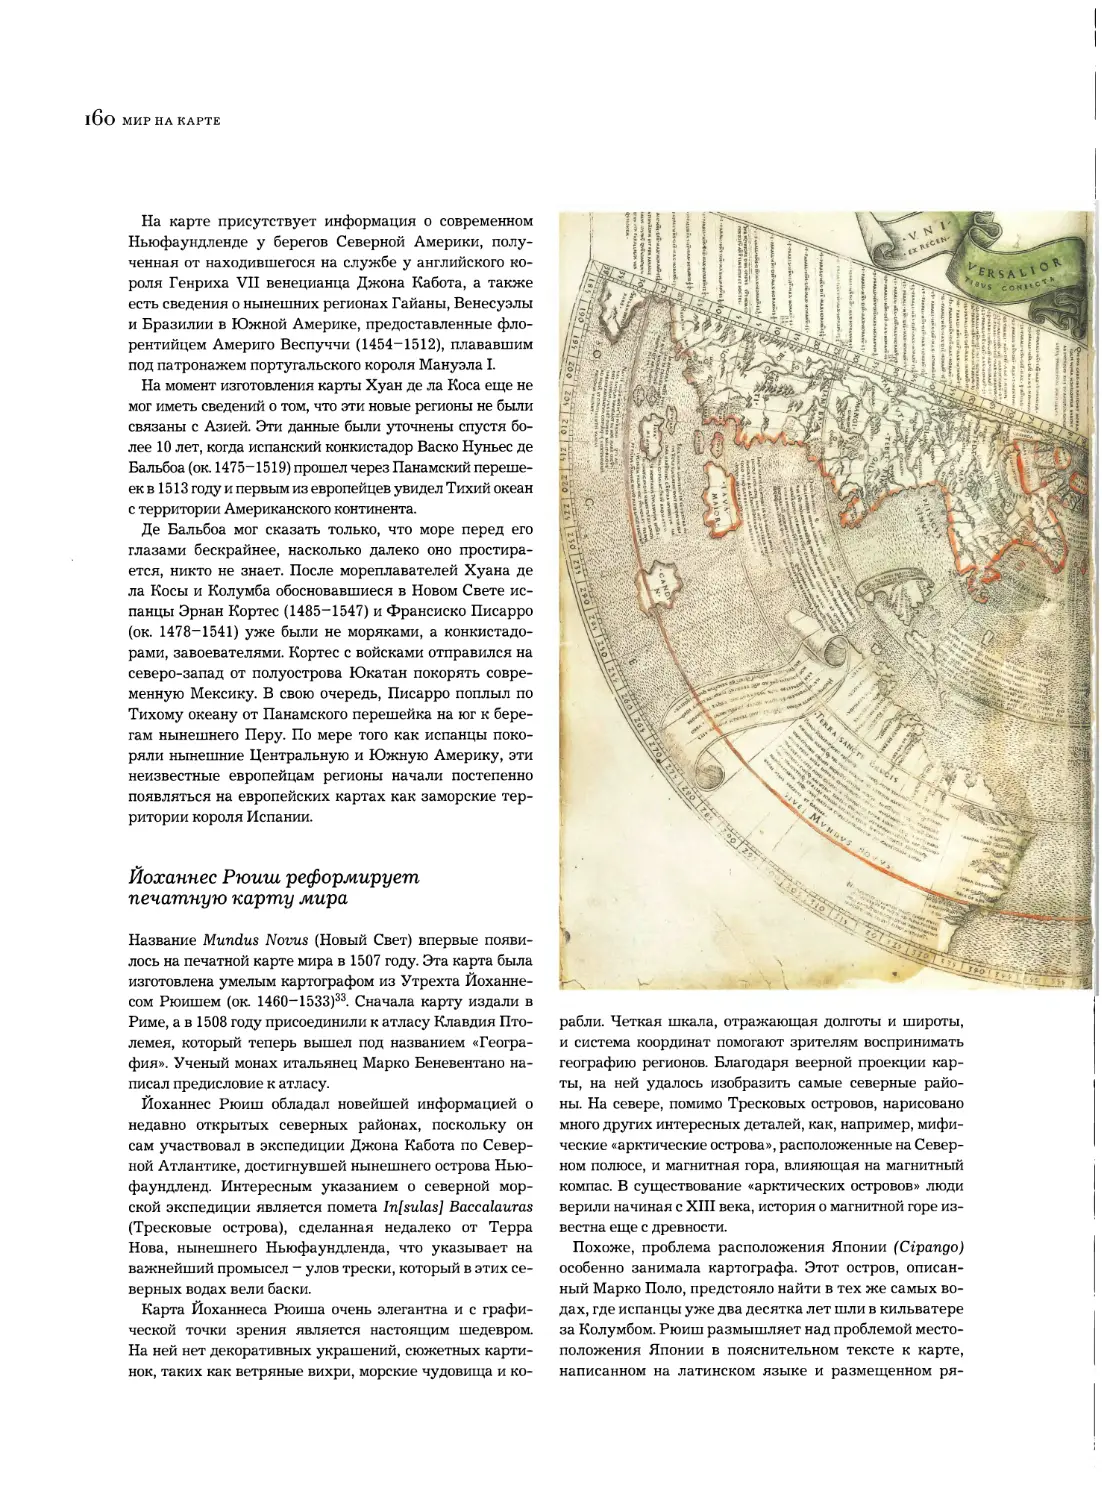 Йоханнес Рюиш реформирует печатную карту мира